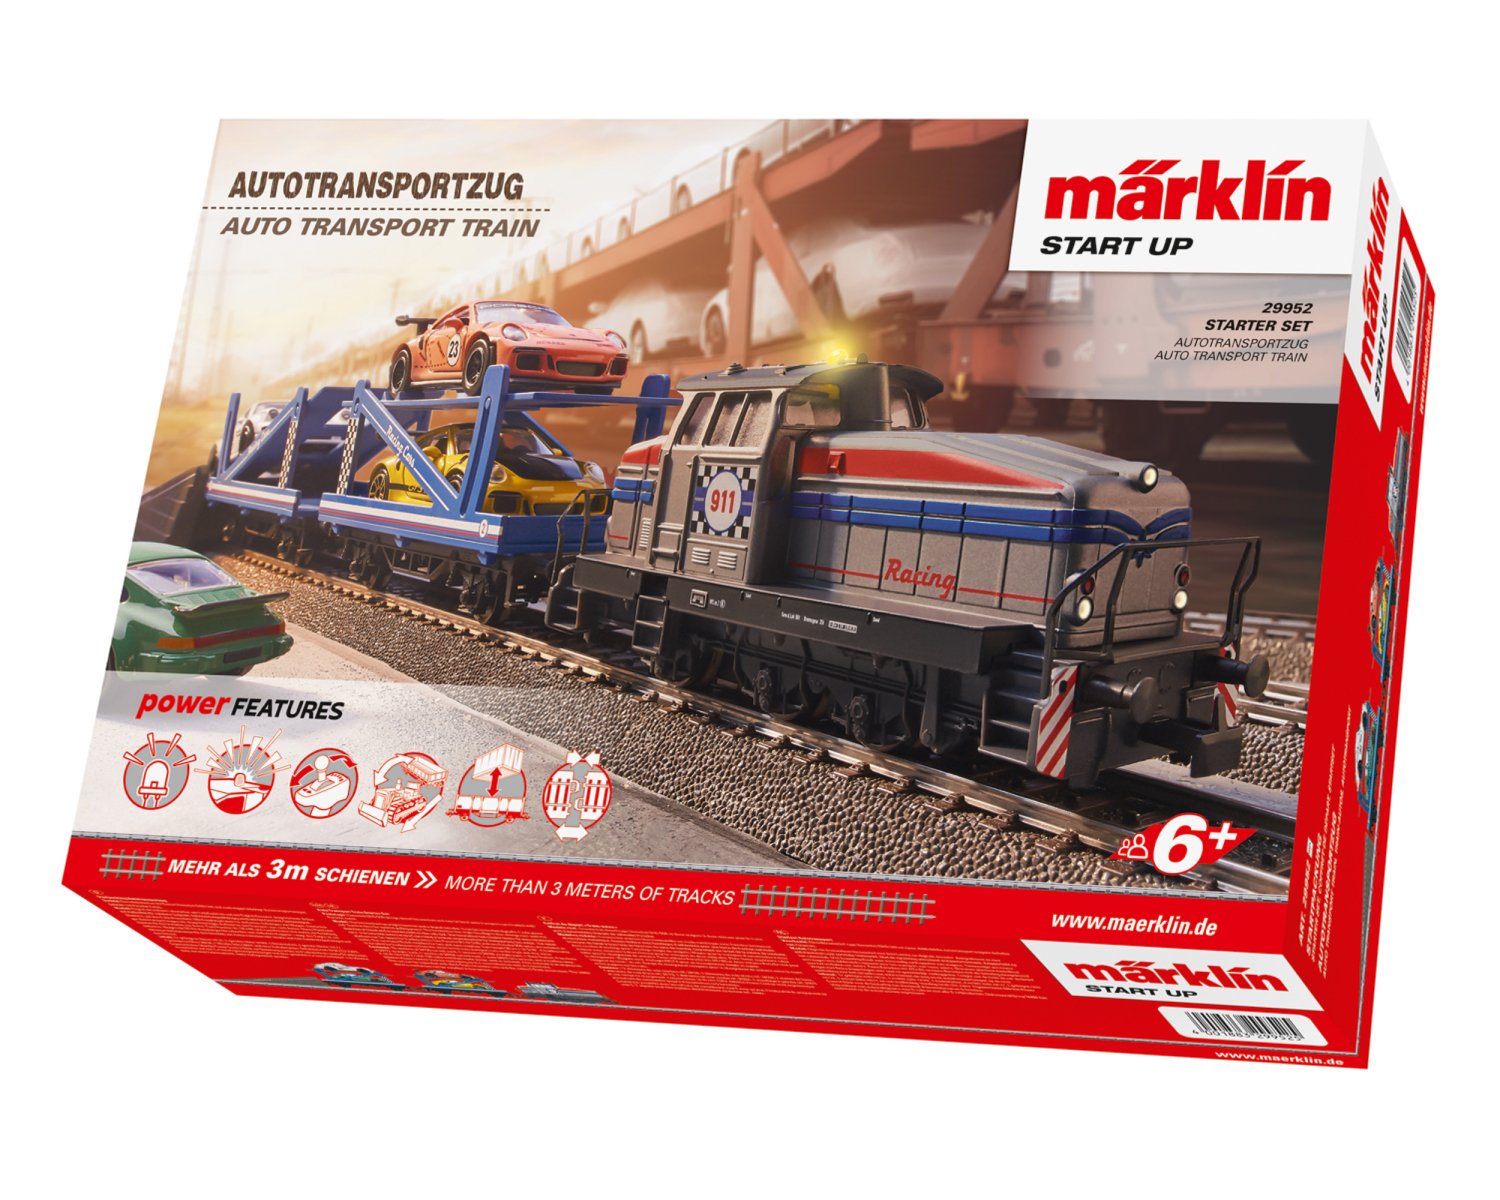 M'A'RKLIN メルクリン 電車模型 3134 MARKLIN | nate-hospital.com